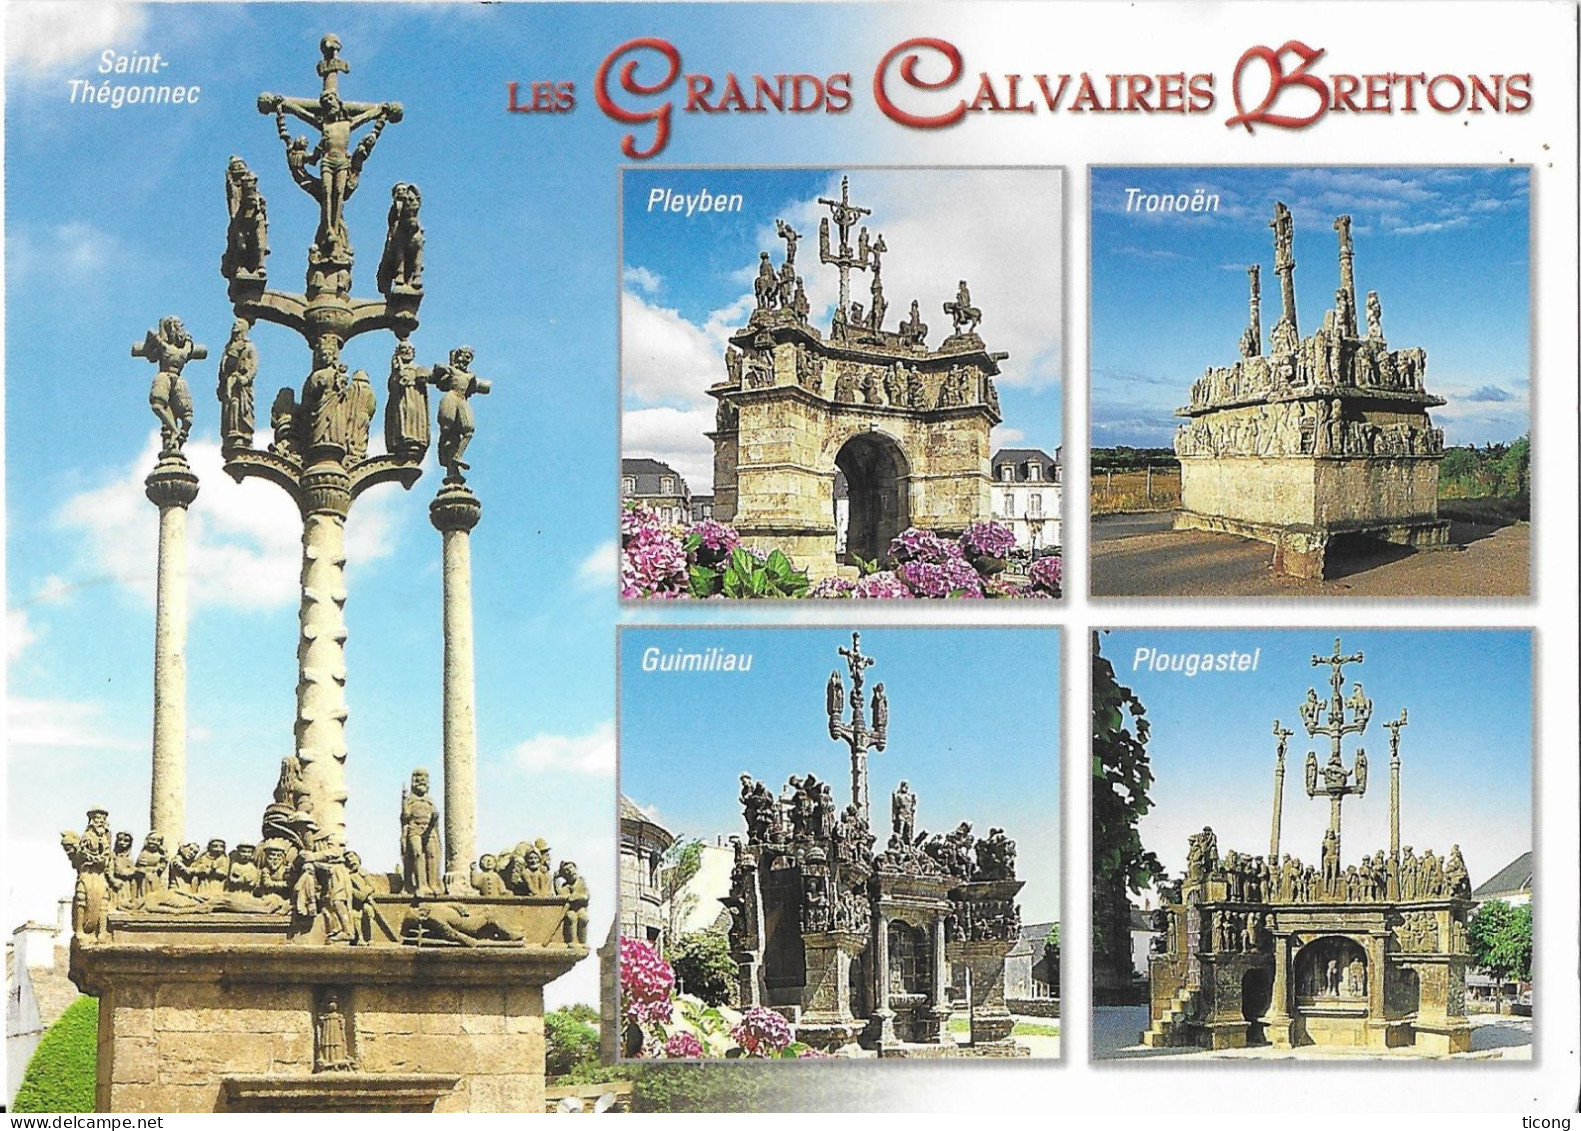 GRANDS CALVAIRES BRETONS DES EDITIONS LE DOARE CHATEAULIN ( TRONOEN, PLEYBEN, PLOUGASTEL, GUILMINAU, SAINT THEGONNEC ) - Monumente